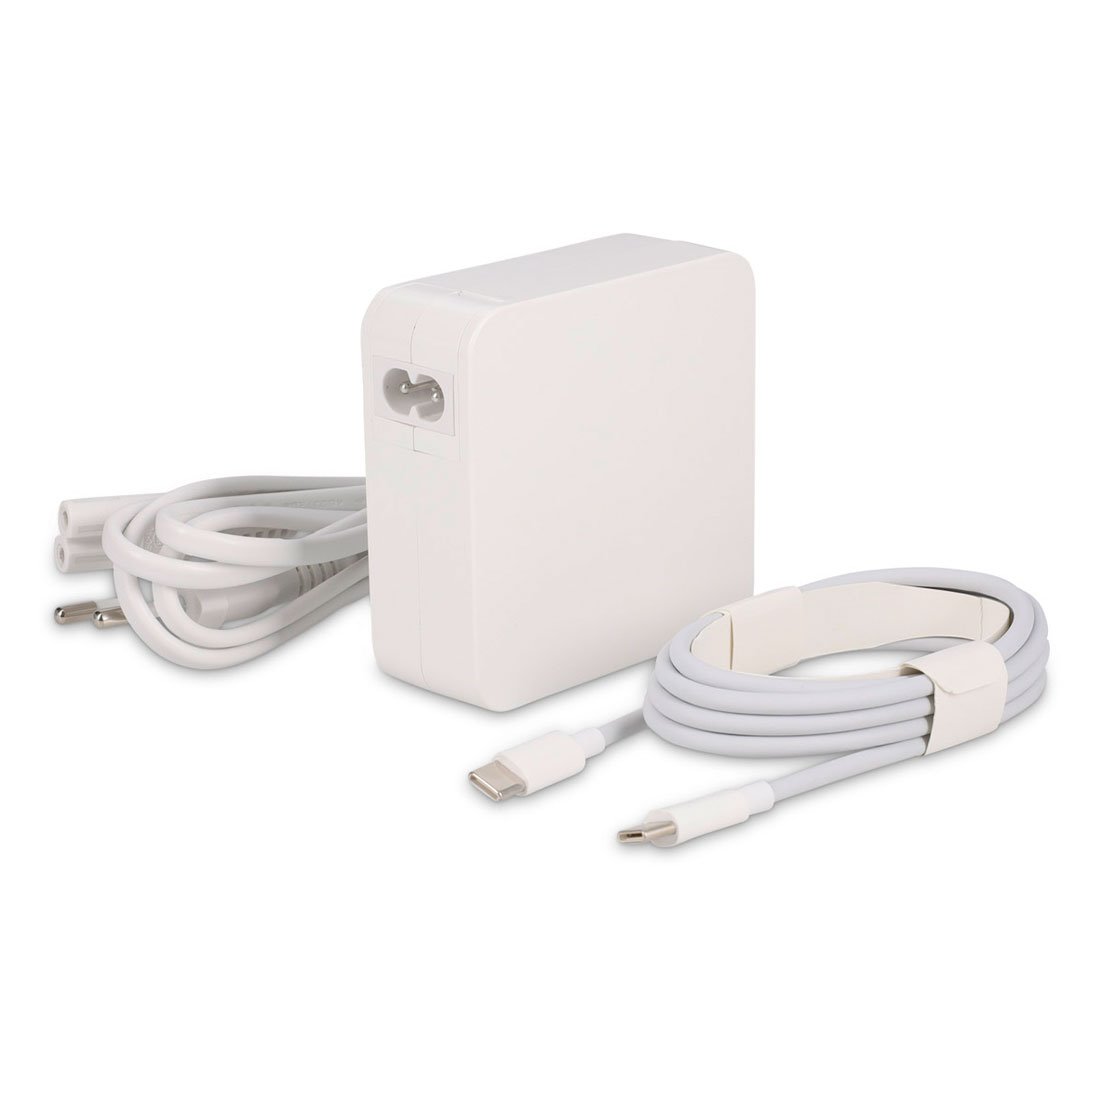 LMP USB-C Power Adapter 67W/61W - White